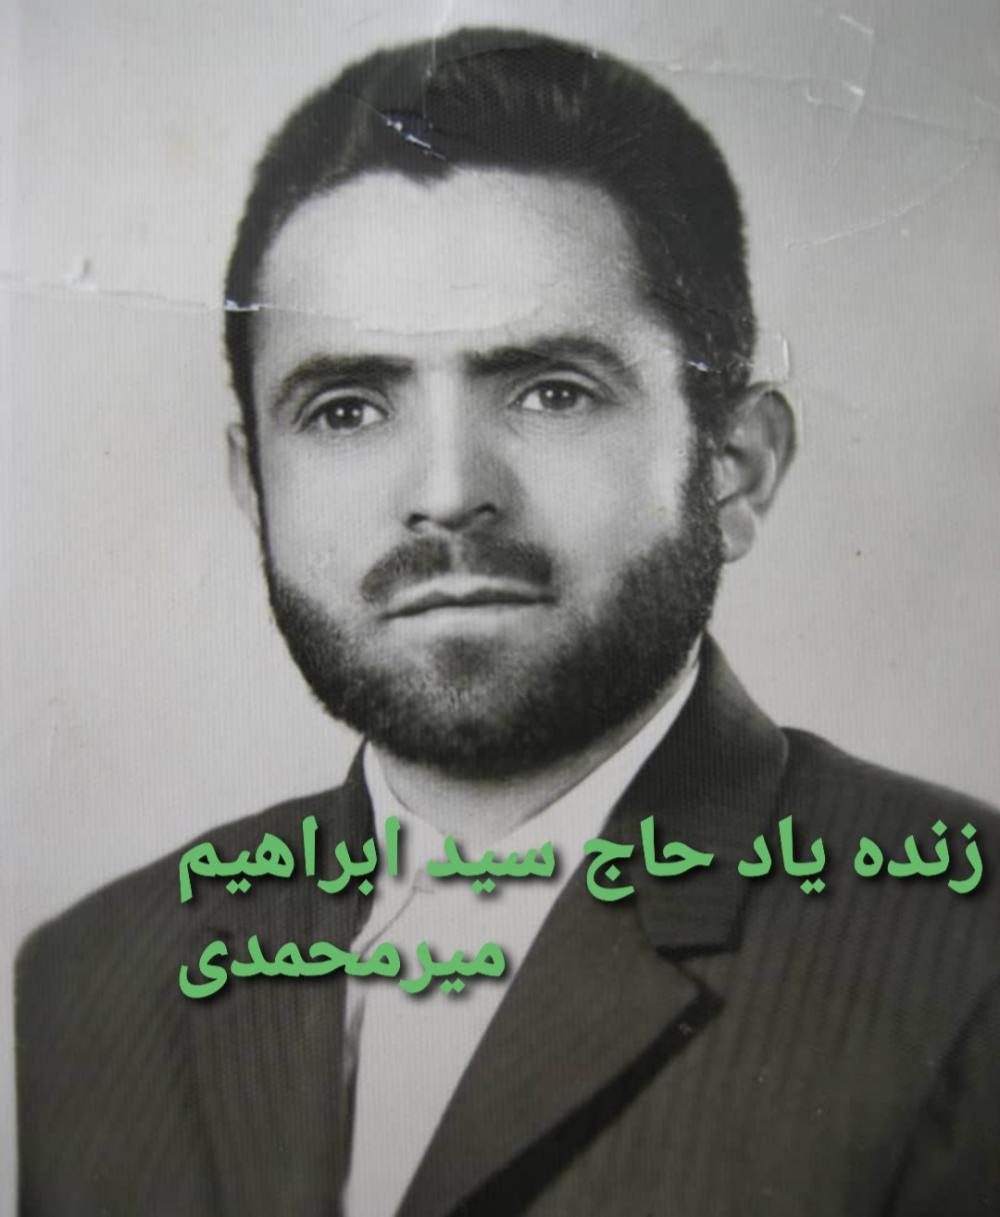 یادبود شادروان حاج سید ابراهیم میرمحمد میگونی